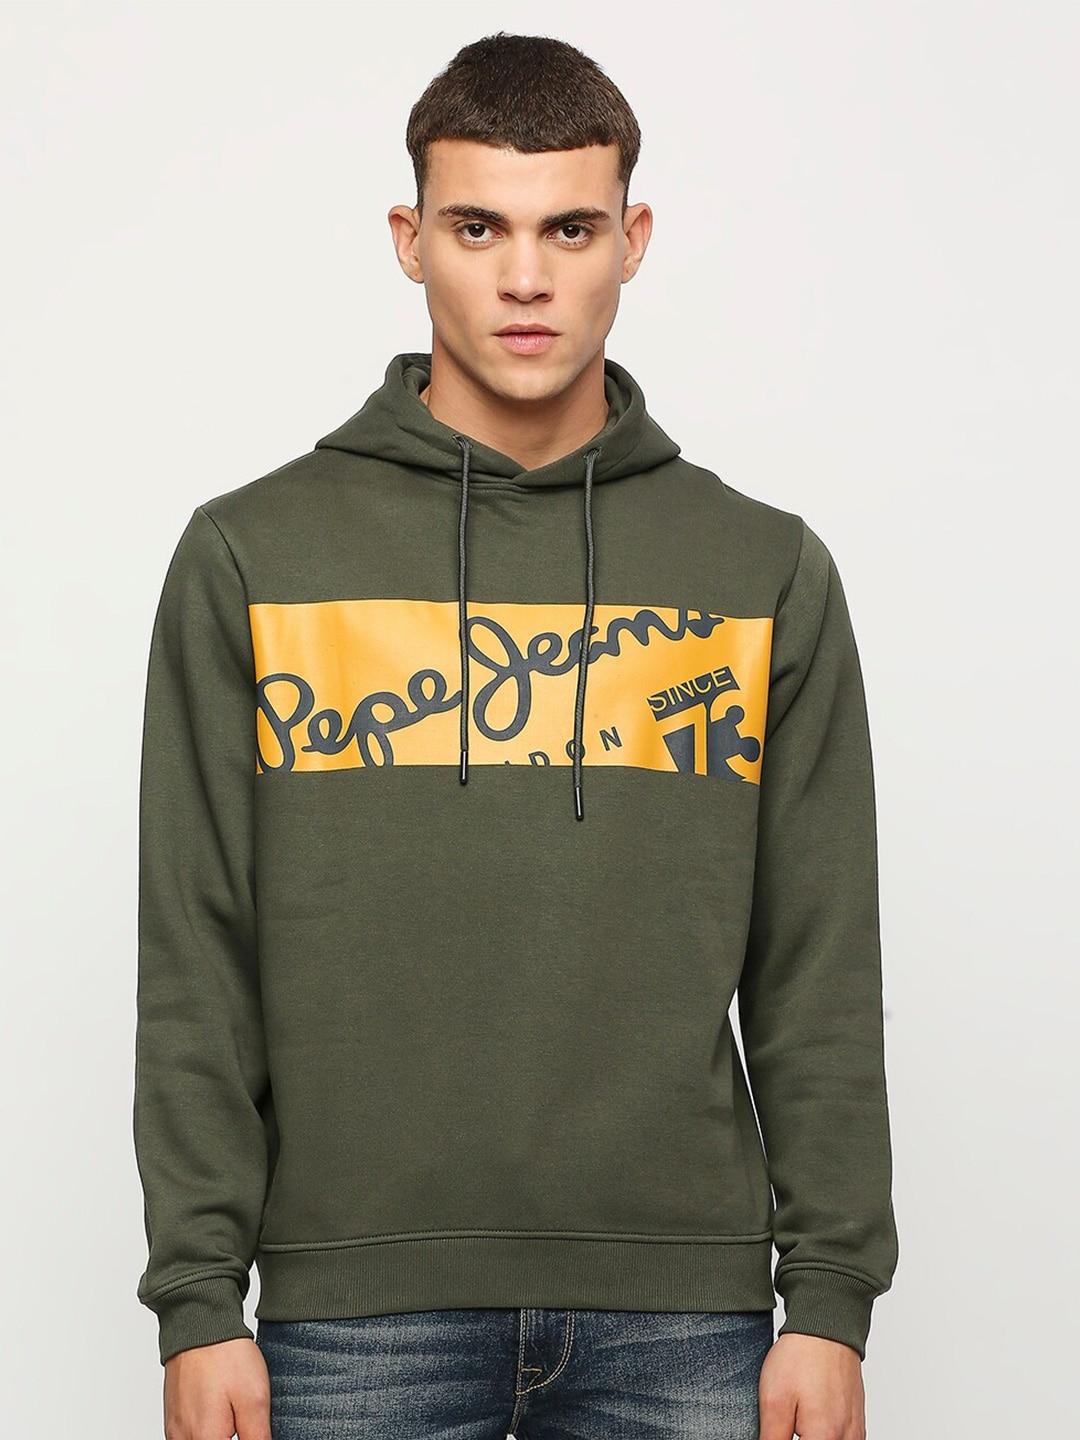 pepe-jeans-typography-printed-hooded-sweatshirt